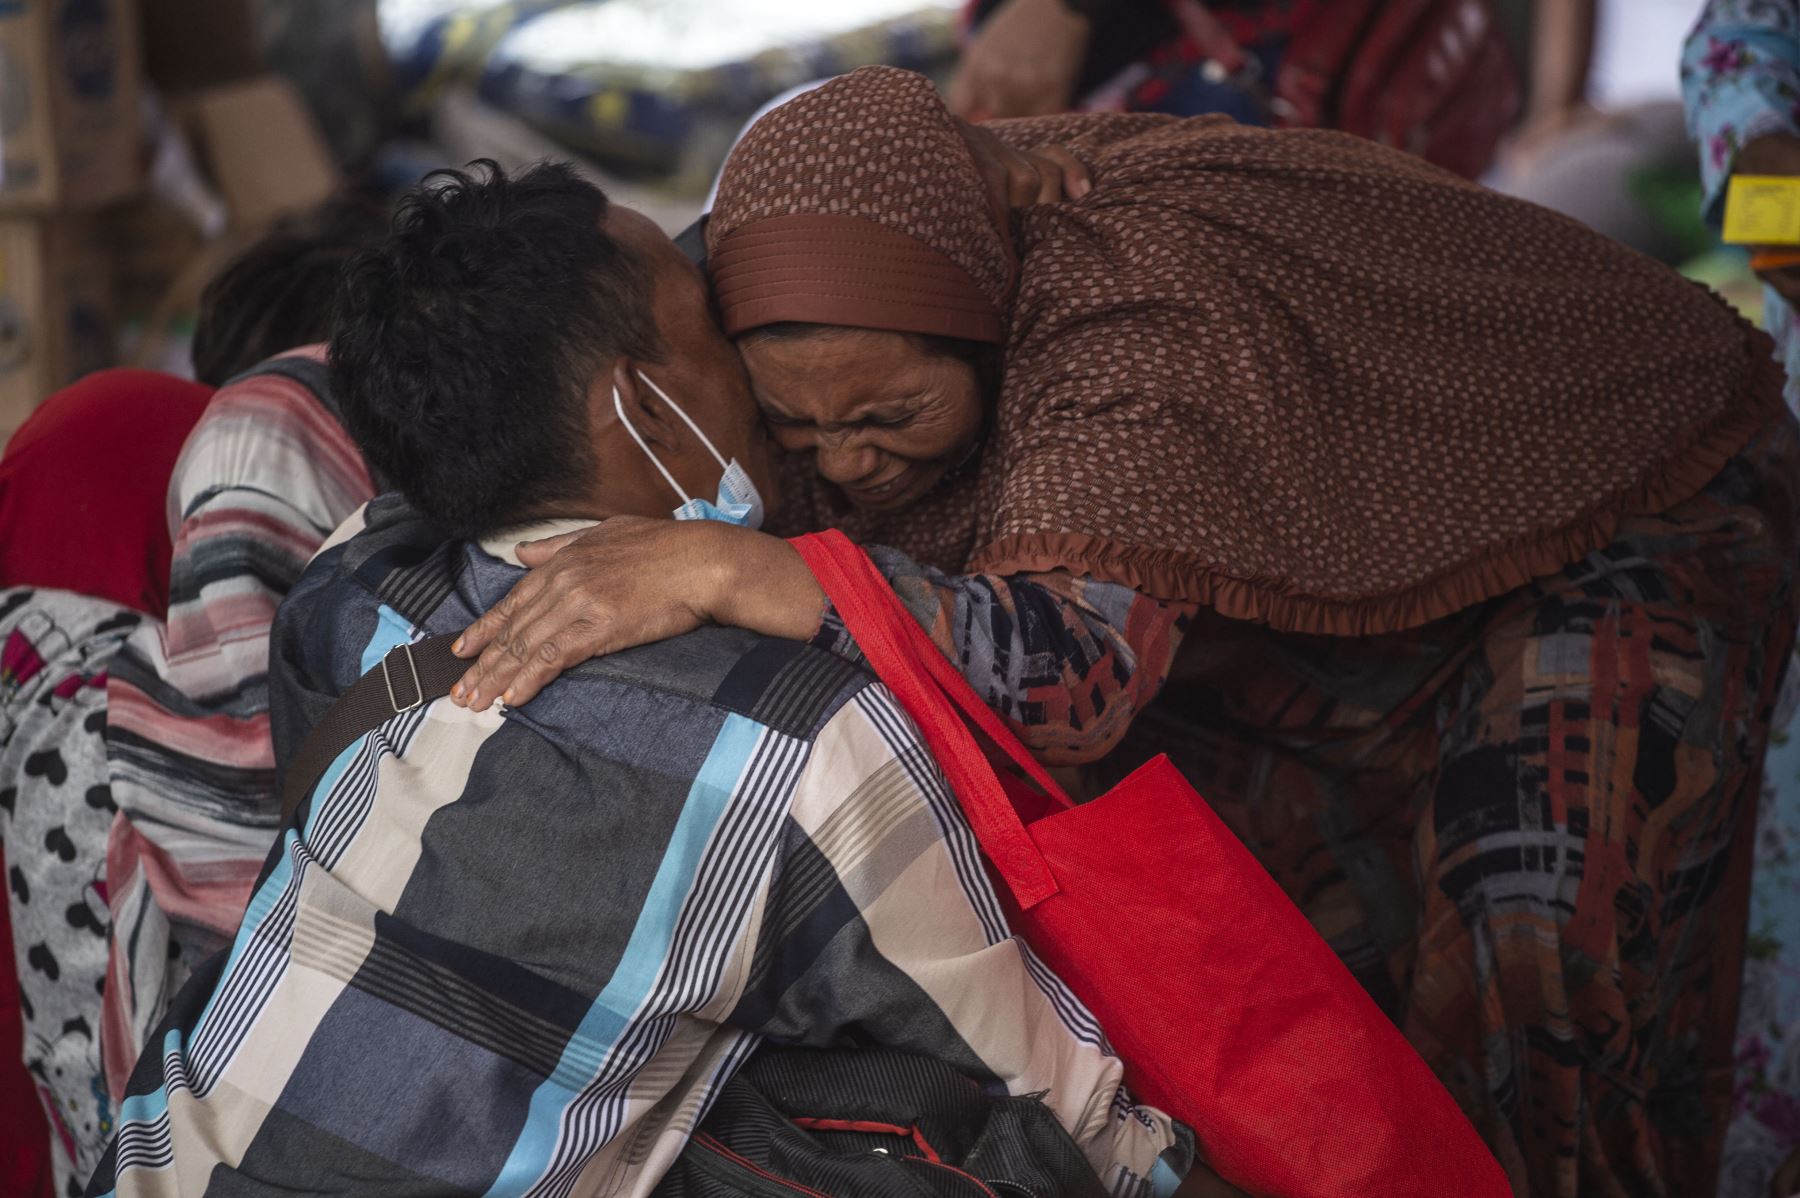 Los aldeanos se reúnen en un refugio improvisado en la aldea de Sumber Wuluh en Lumajang el 6 de diciembre de 2021, después de la erupción del volcán Semeru que mató al menos a 15 personas. Foto: AFP